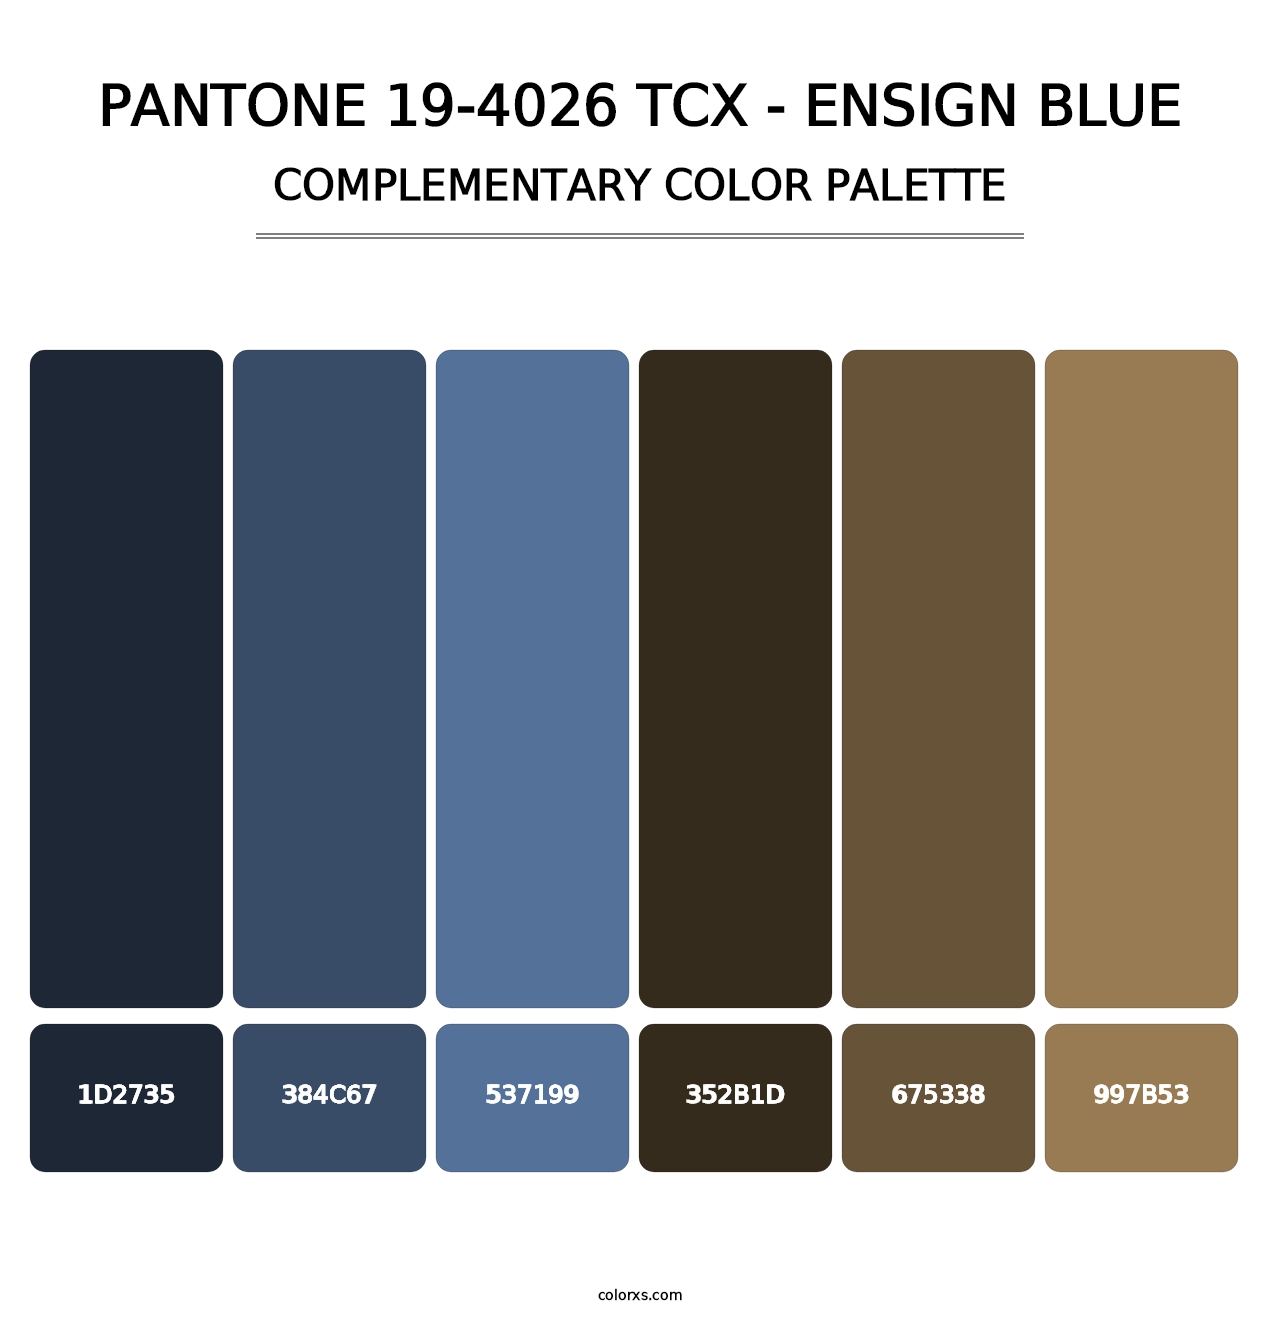 PANTONE 19-4026 TCX - Ensign Blue - Complementary Color Palette